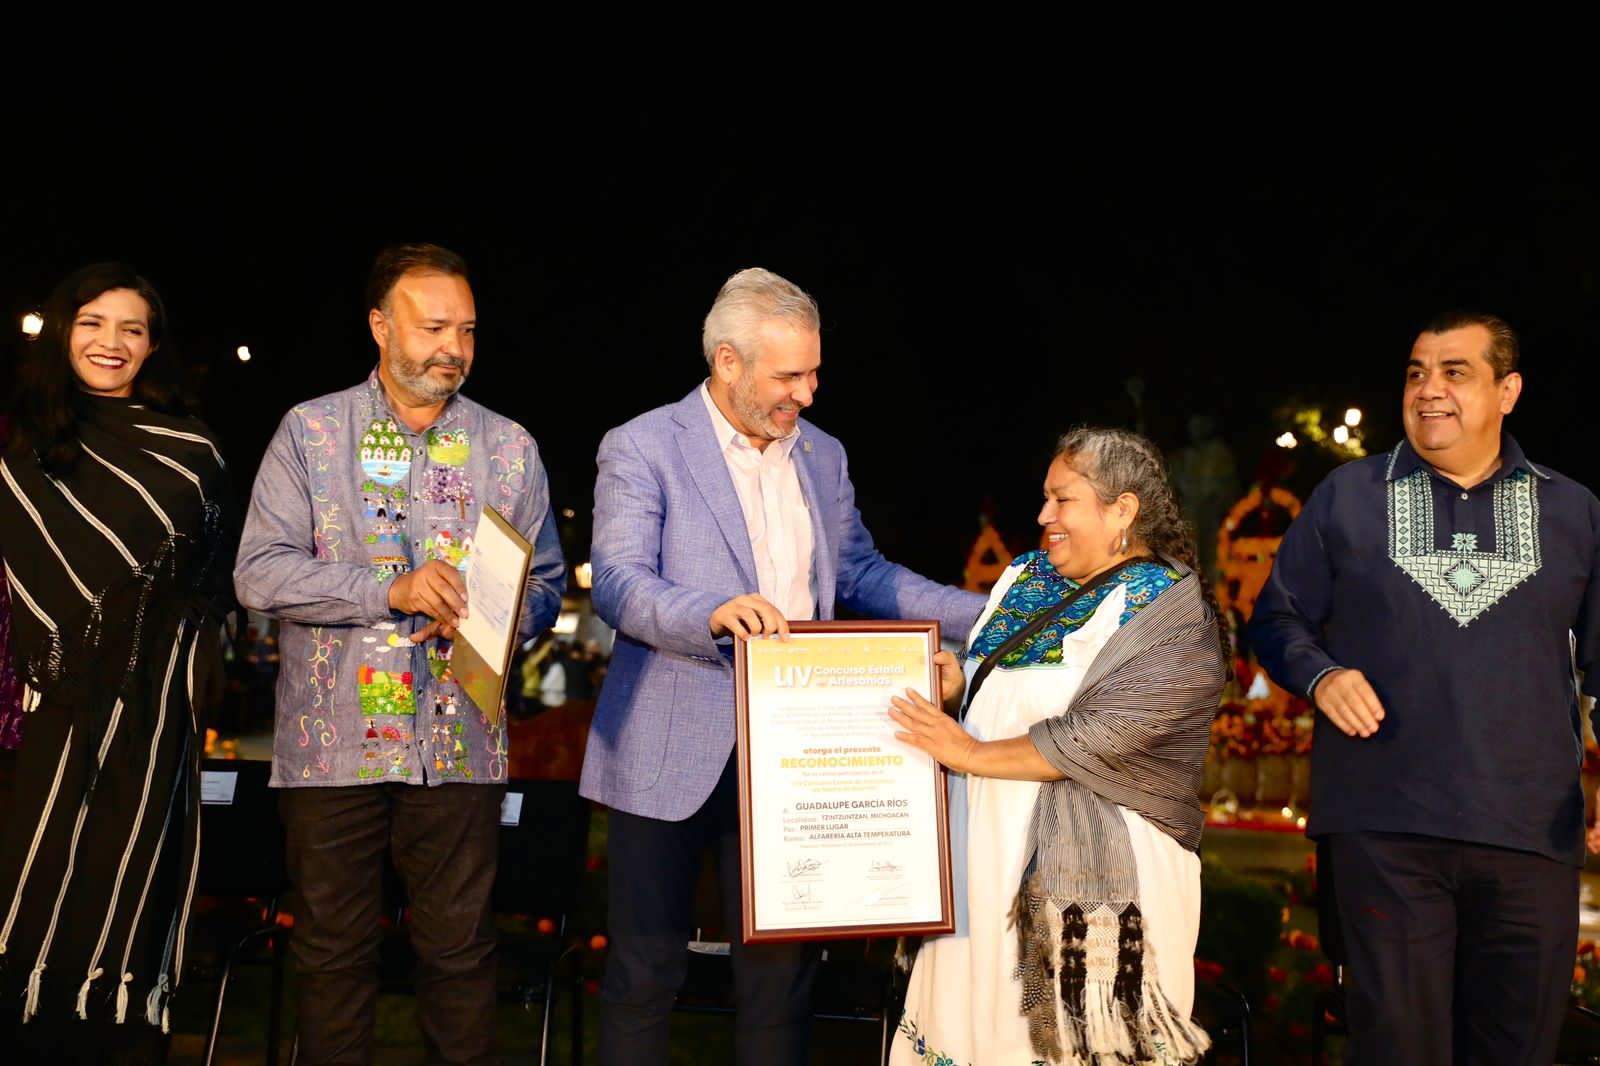 Bedolla premia las "manos mágicas" de los artesanos michoacanos